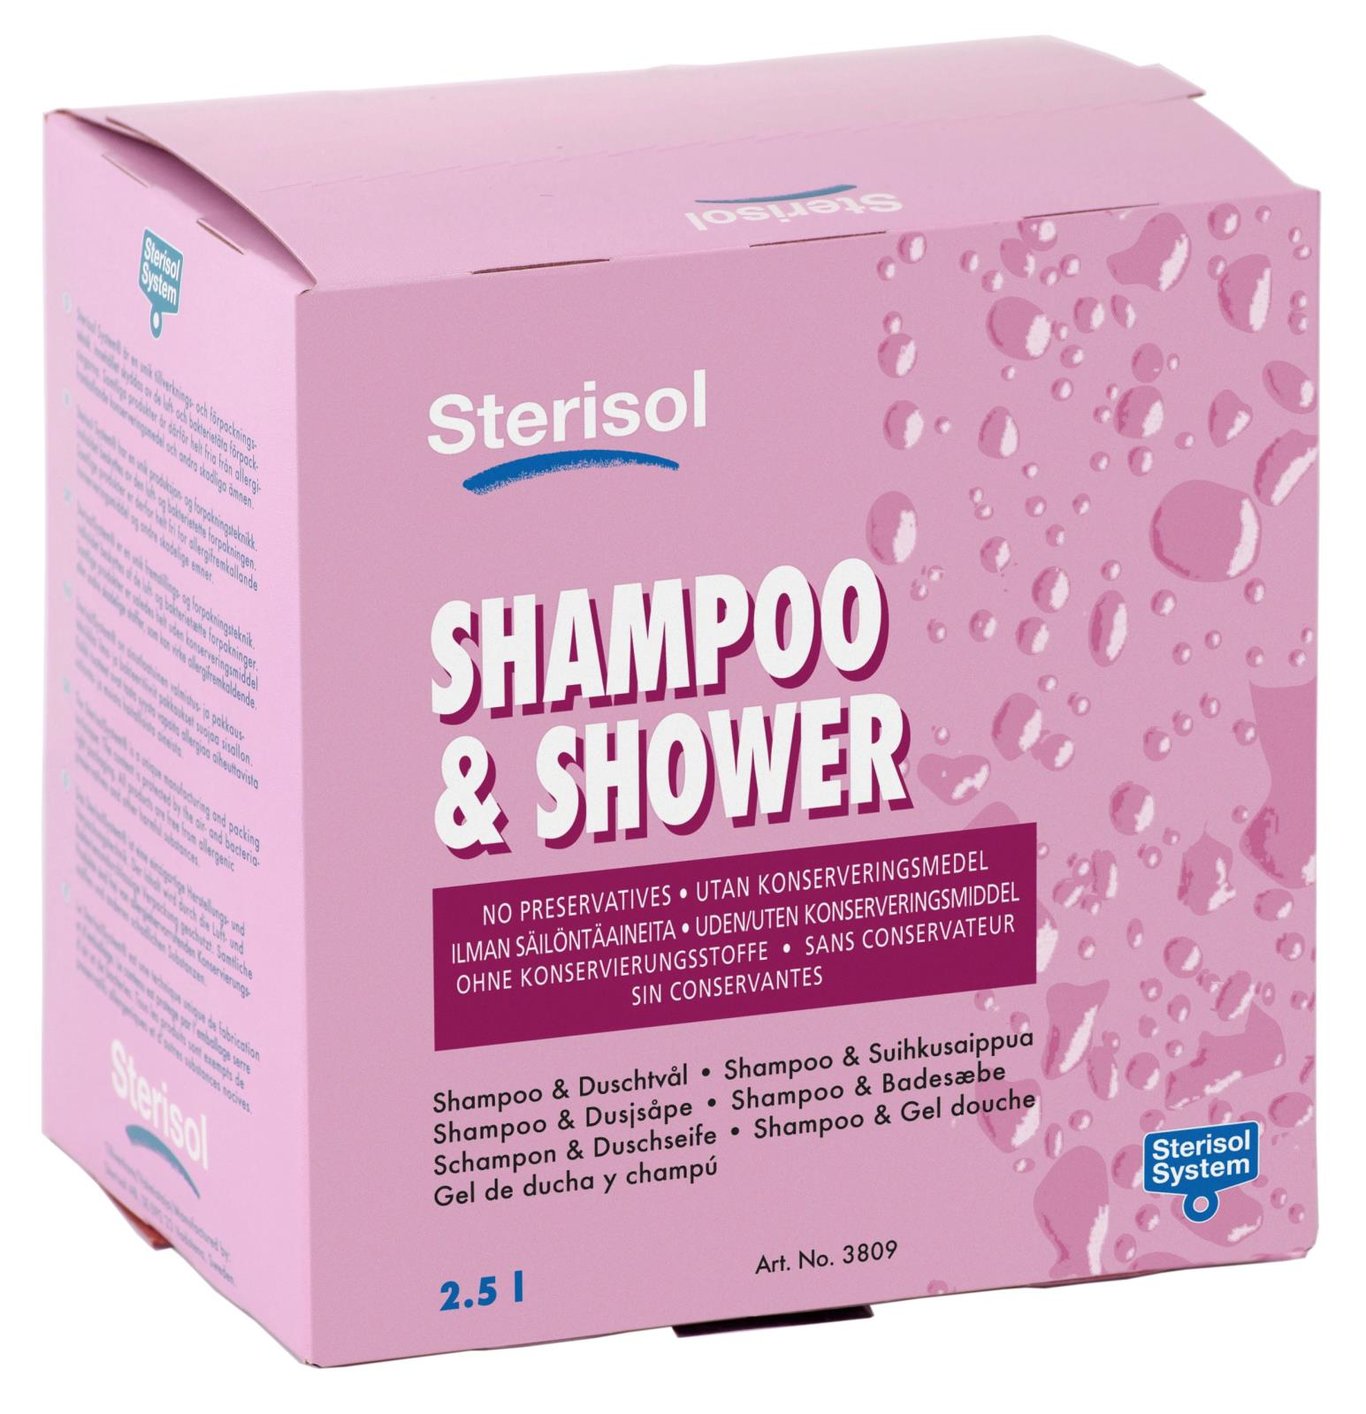 Shampoo & Shower Sterisol Parfymerad 2,5L 51020069